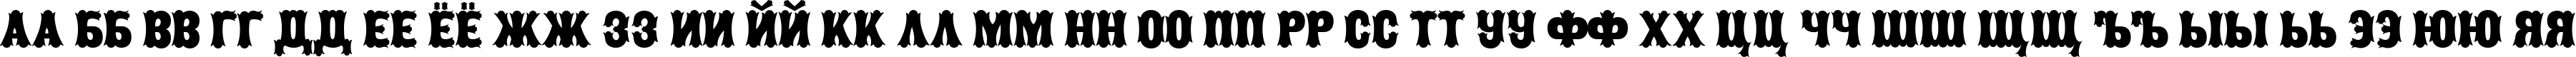 Пример написания русского алфавита шрифтом Caberne